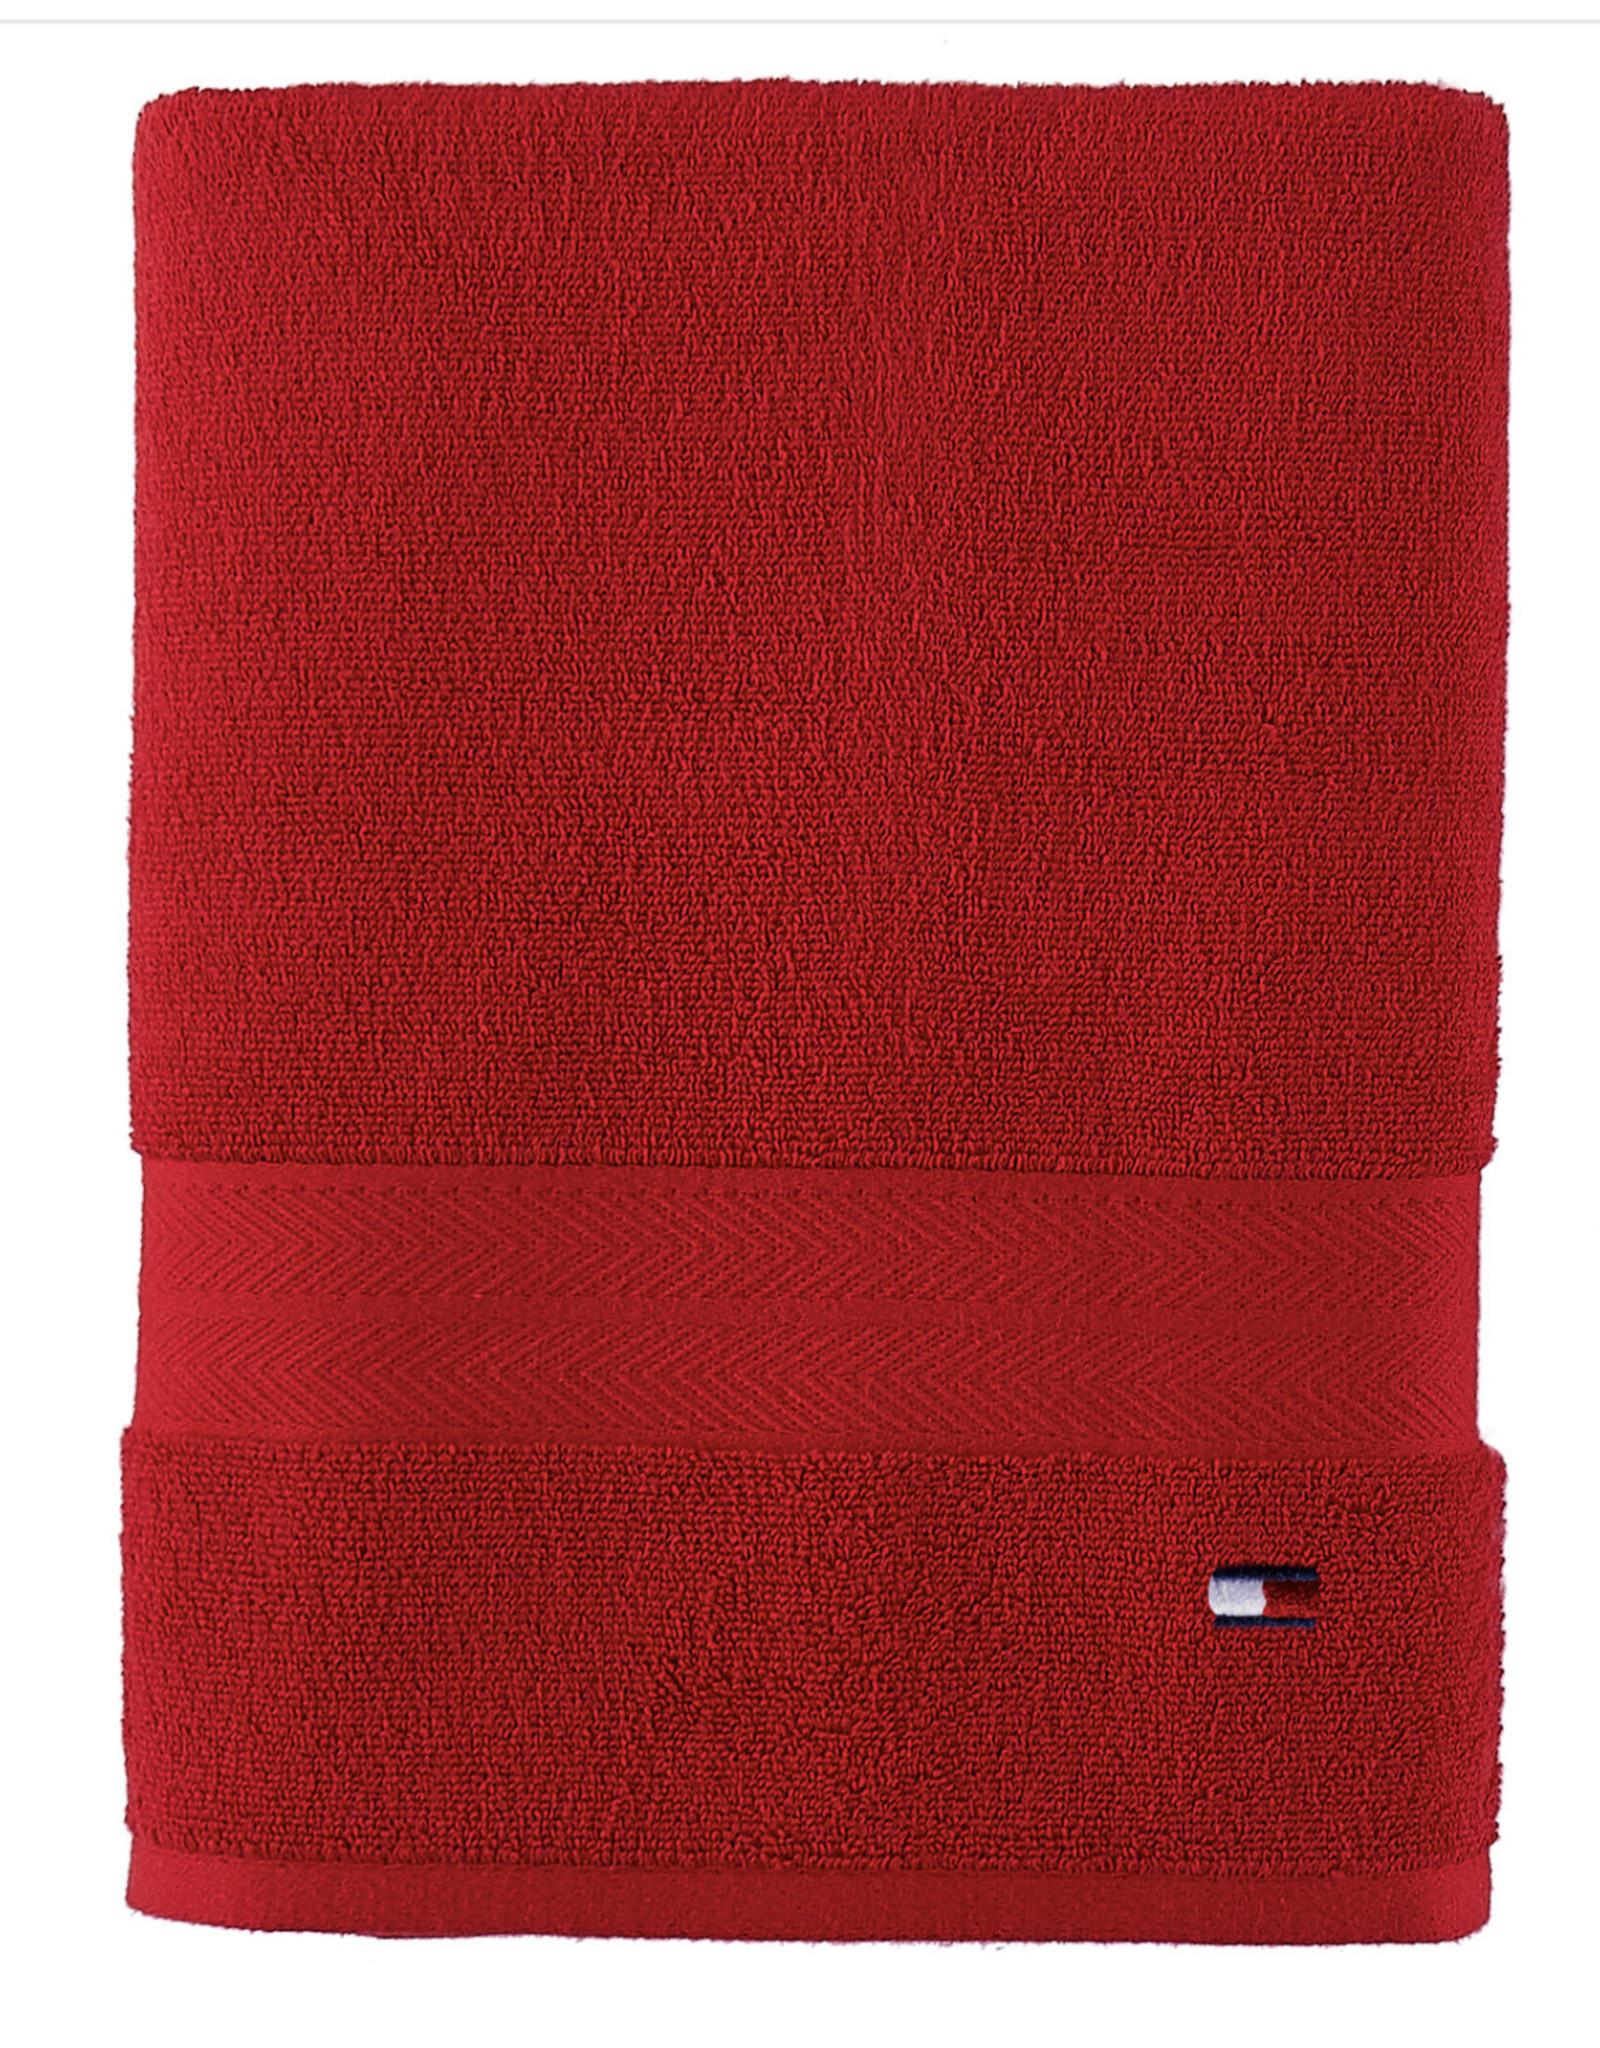 Tommy Hilfiger Modern American Solid Cotton Bath Towel, 30 x 54